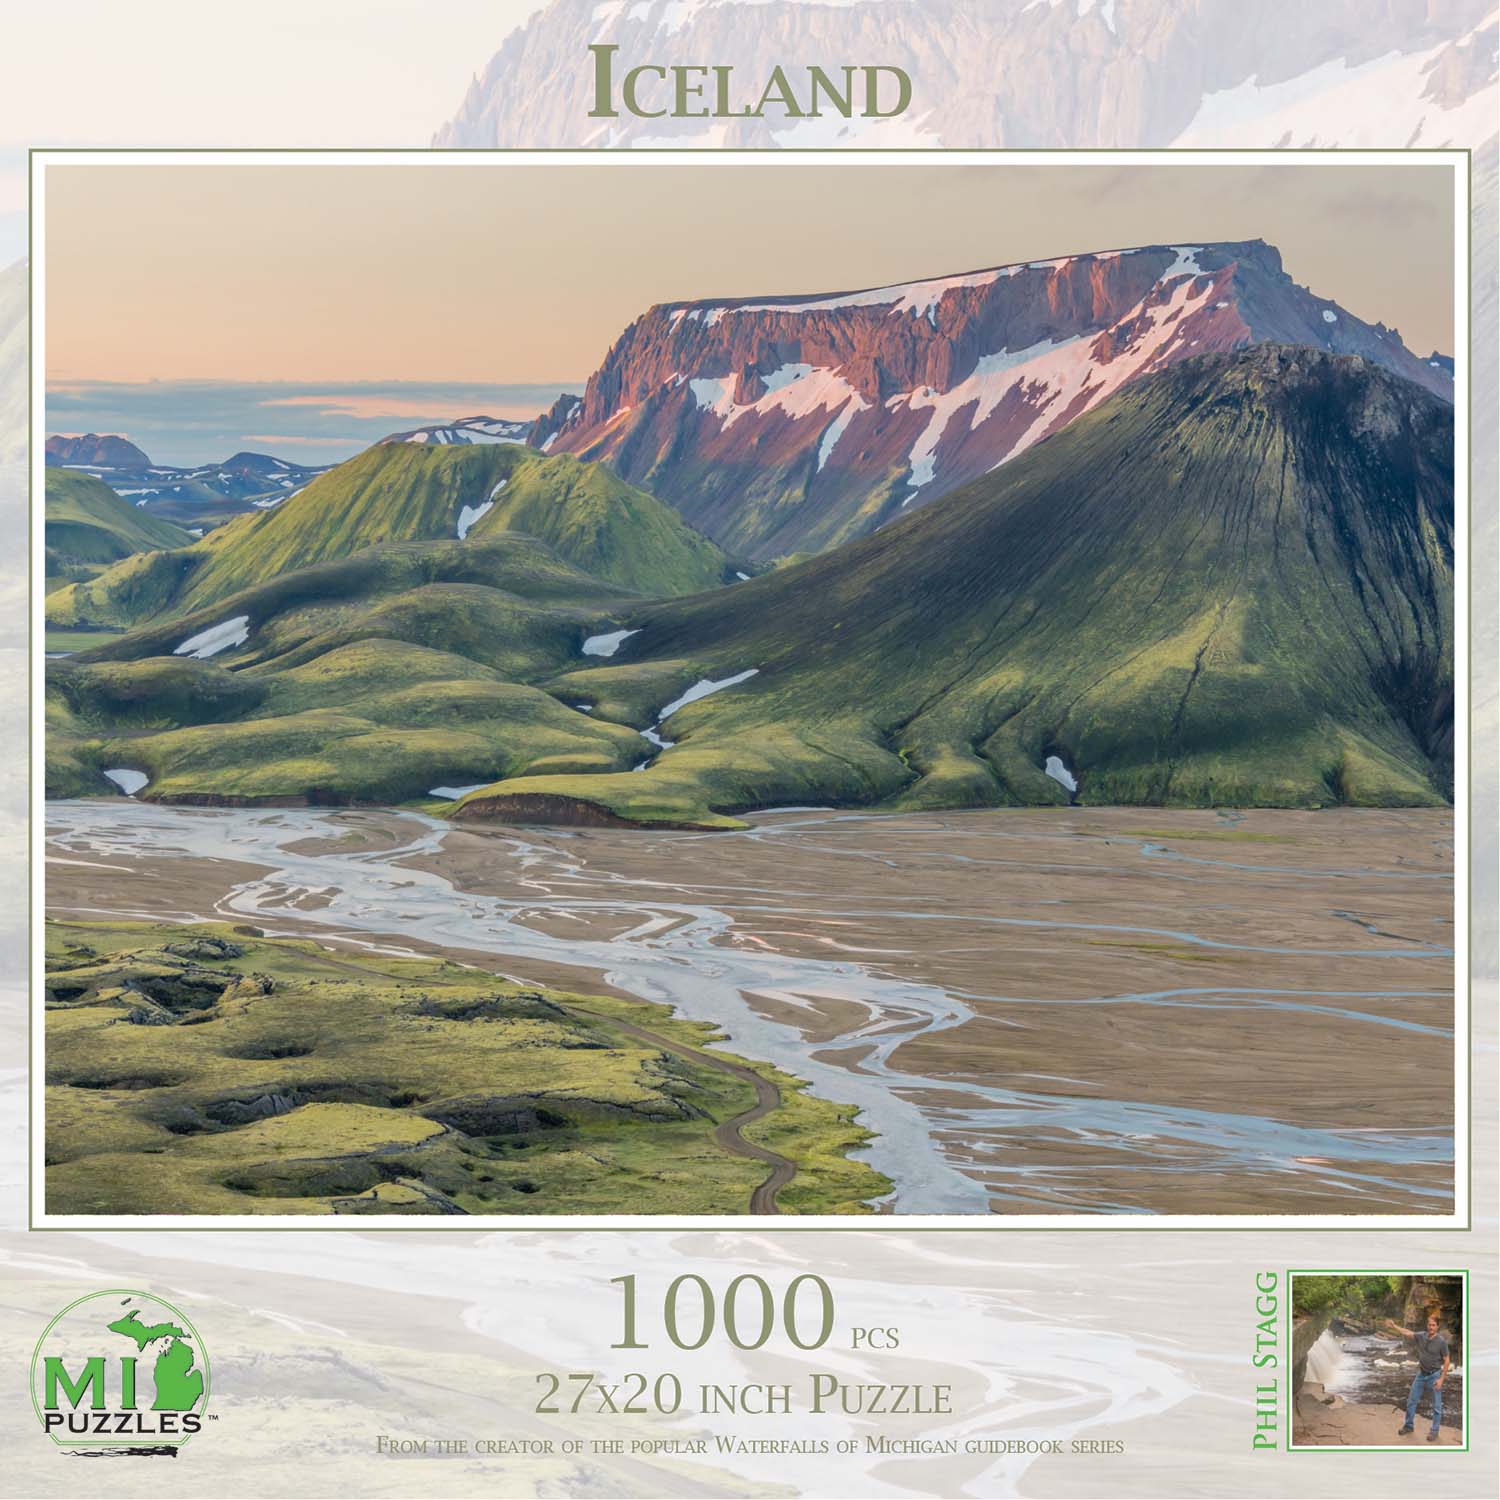 Iceland Travel Jigsaw Puzzle